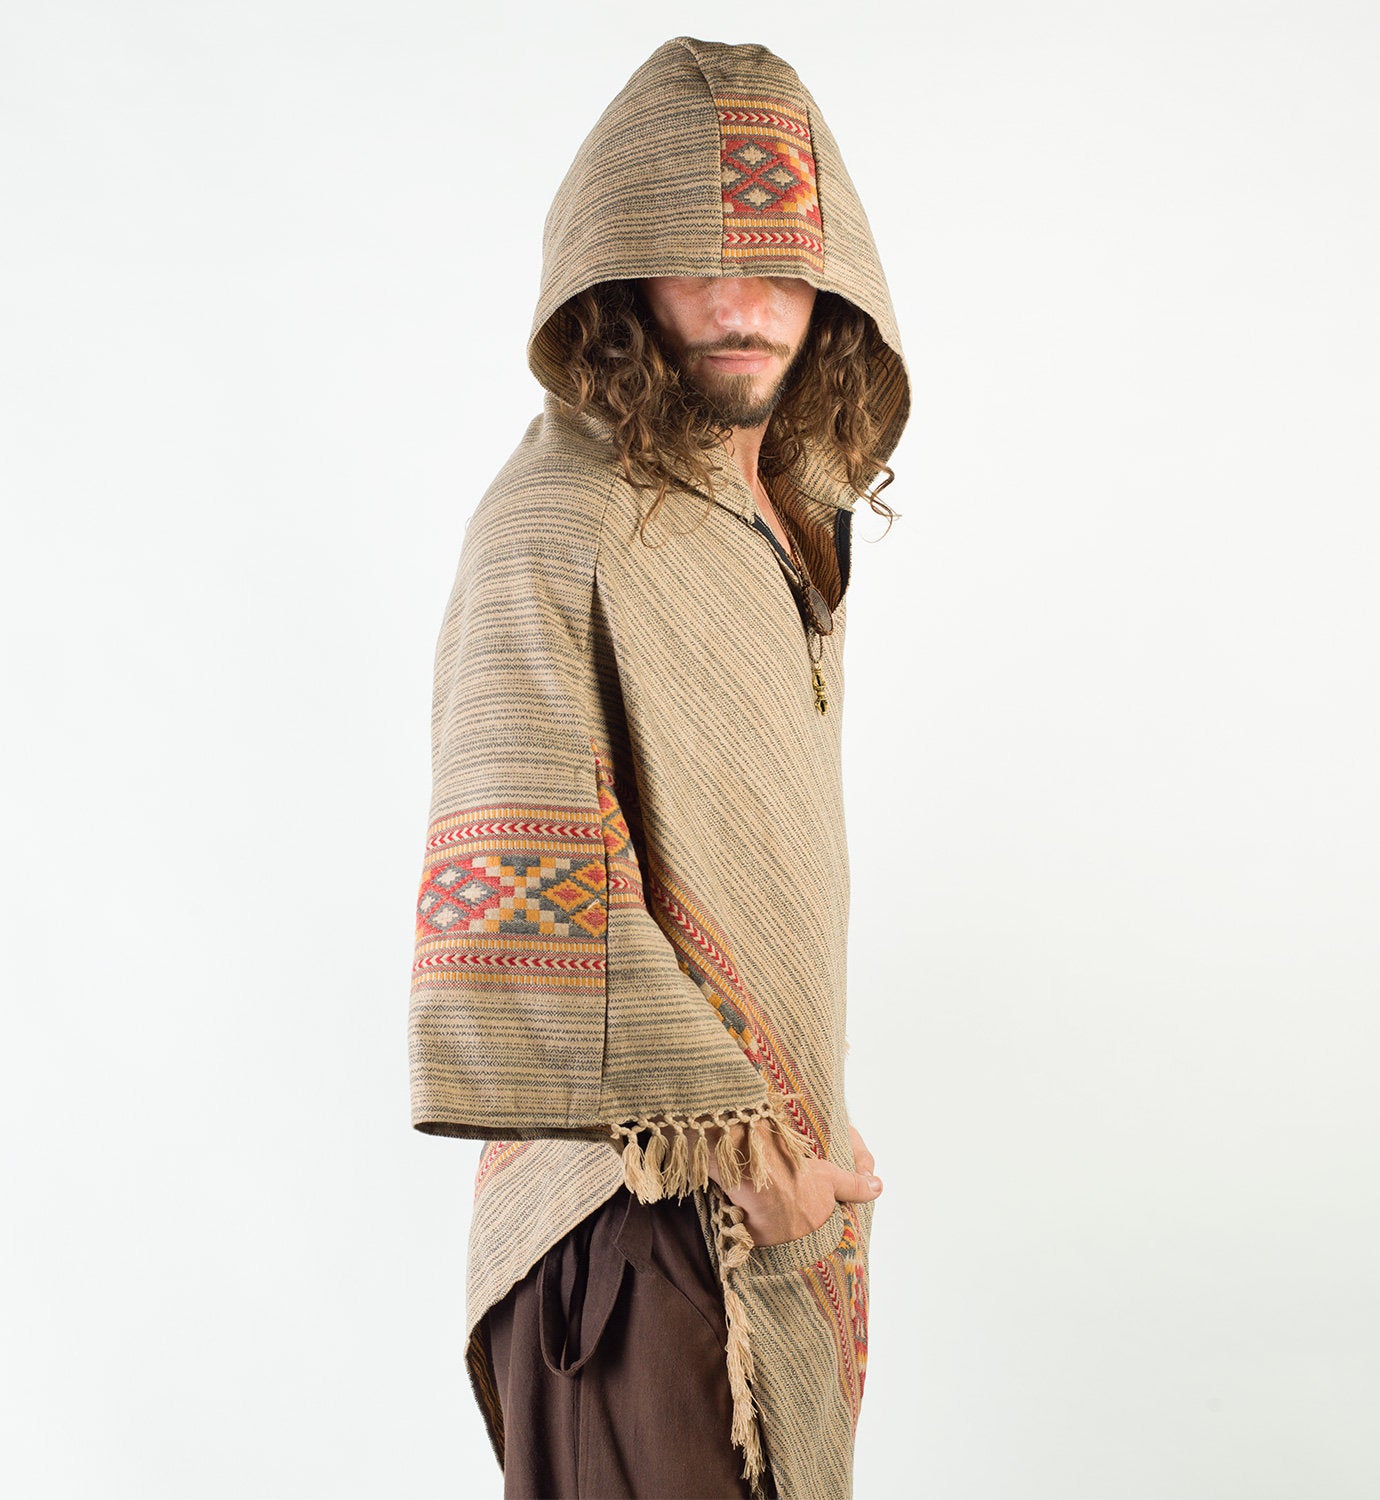 Poncho con capucha marrón para hombre, lana de cachemira, festival hecho a mano Boho primitivo gitano, talla única dos bolsillos, bordado celta, mexicano, AJJAYA